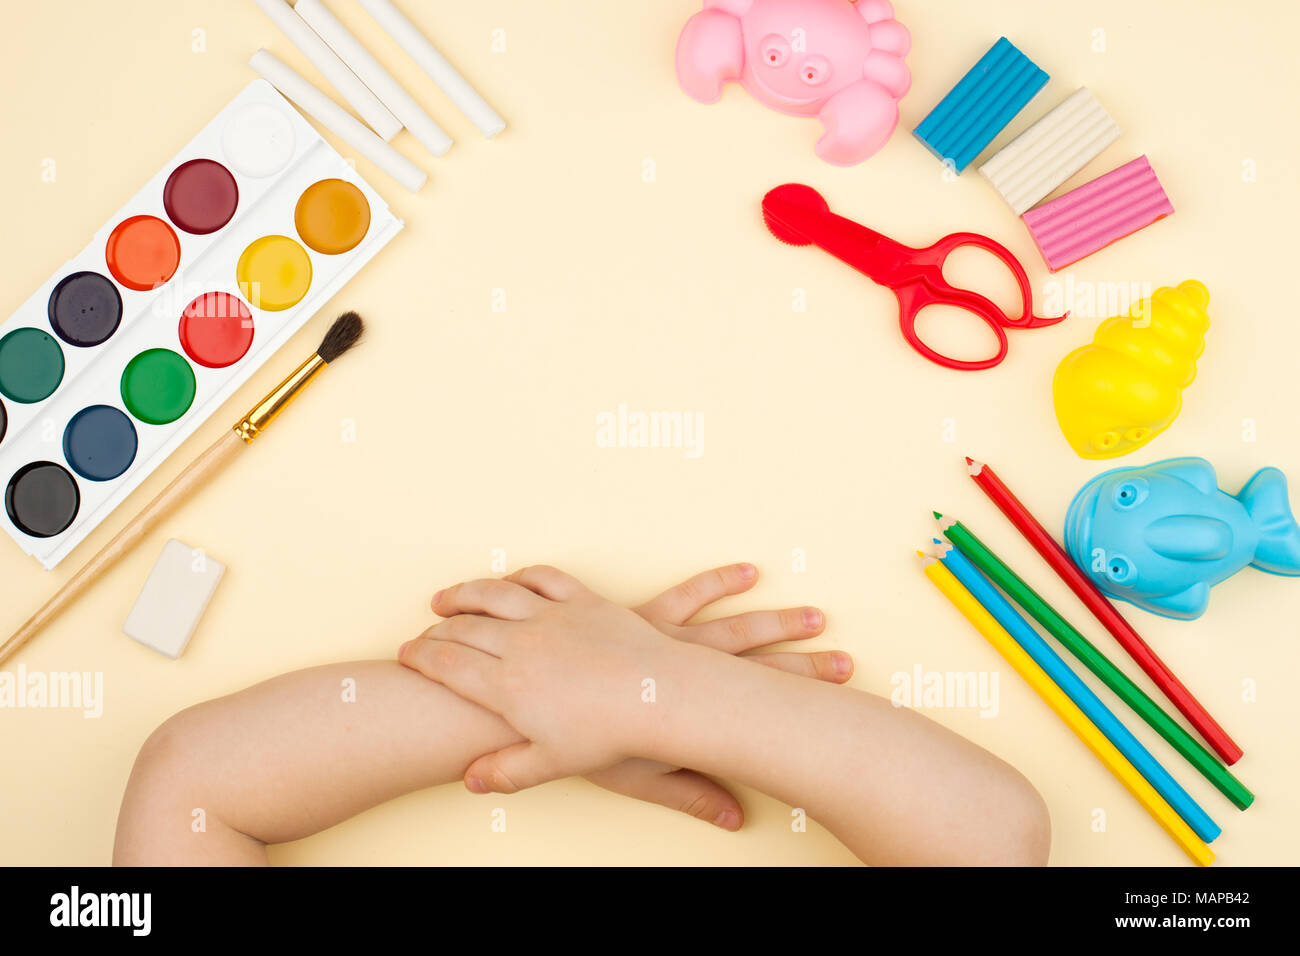 Das Kind sitzt am Tisch mit Objekten für Kreativität, Zeichnung und Hobbys, die Ansicht von oben Stockfoto